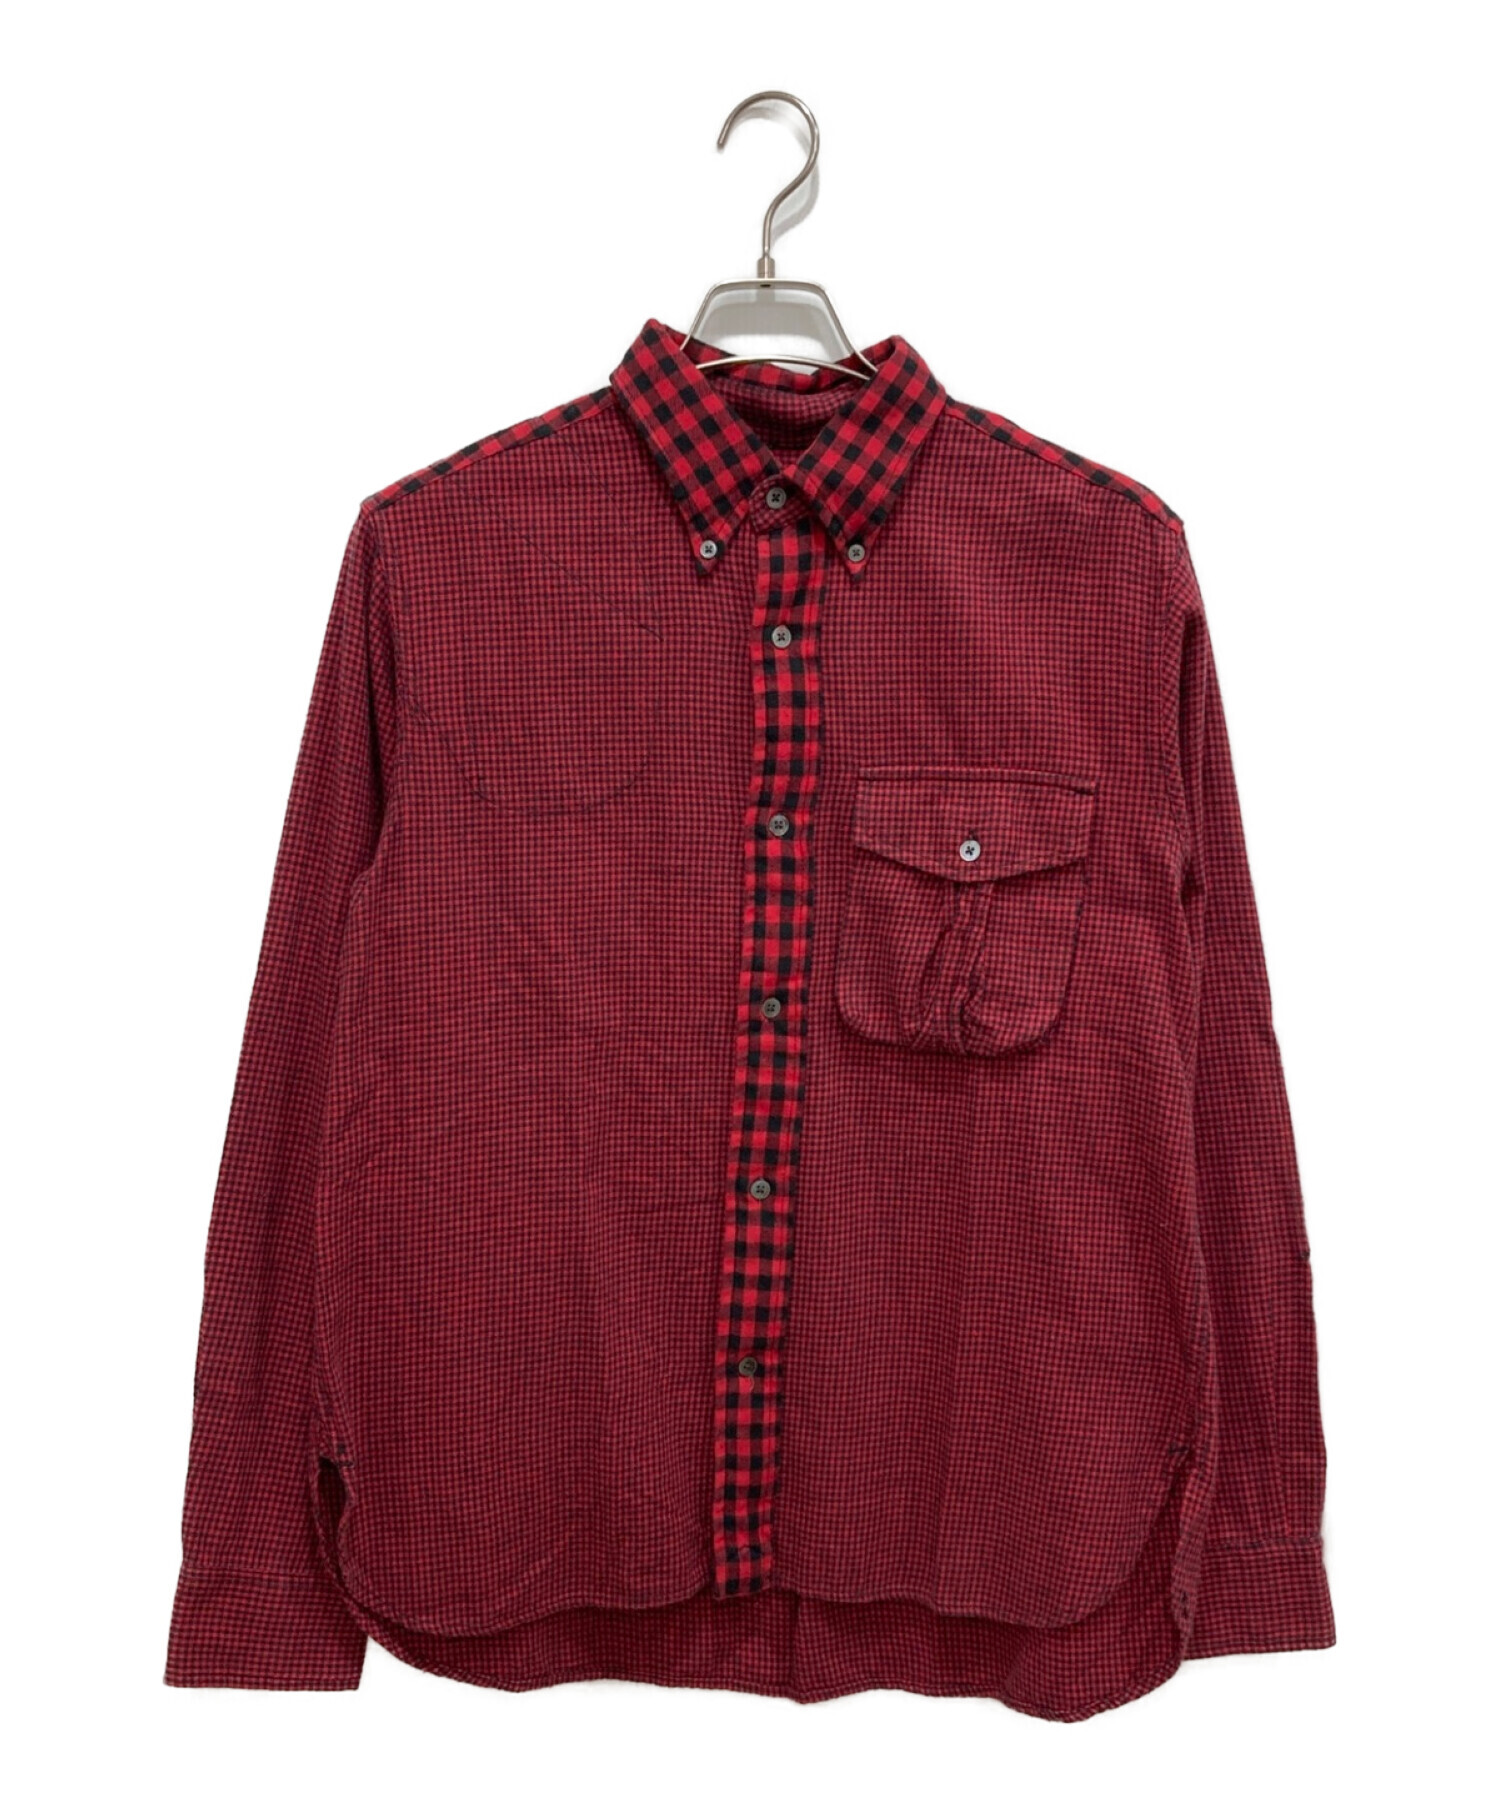 Woolrich Woolen Mills (ウールリッチウーレンミルズ) クレイジーパターンネルシャツ レッド サイズ:M